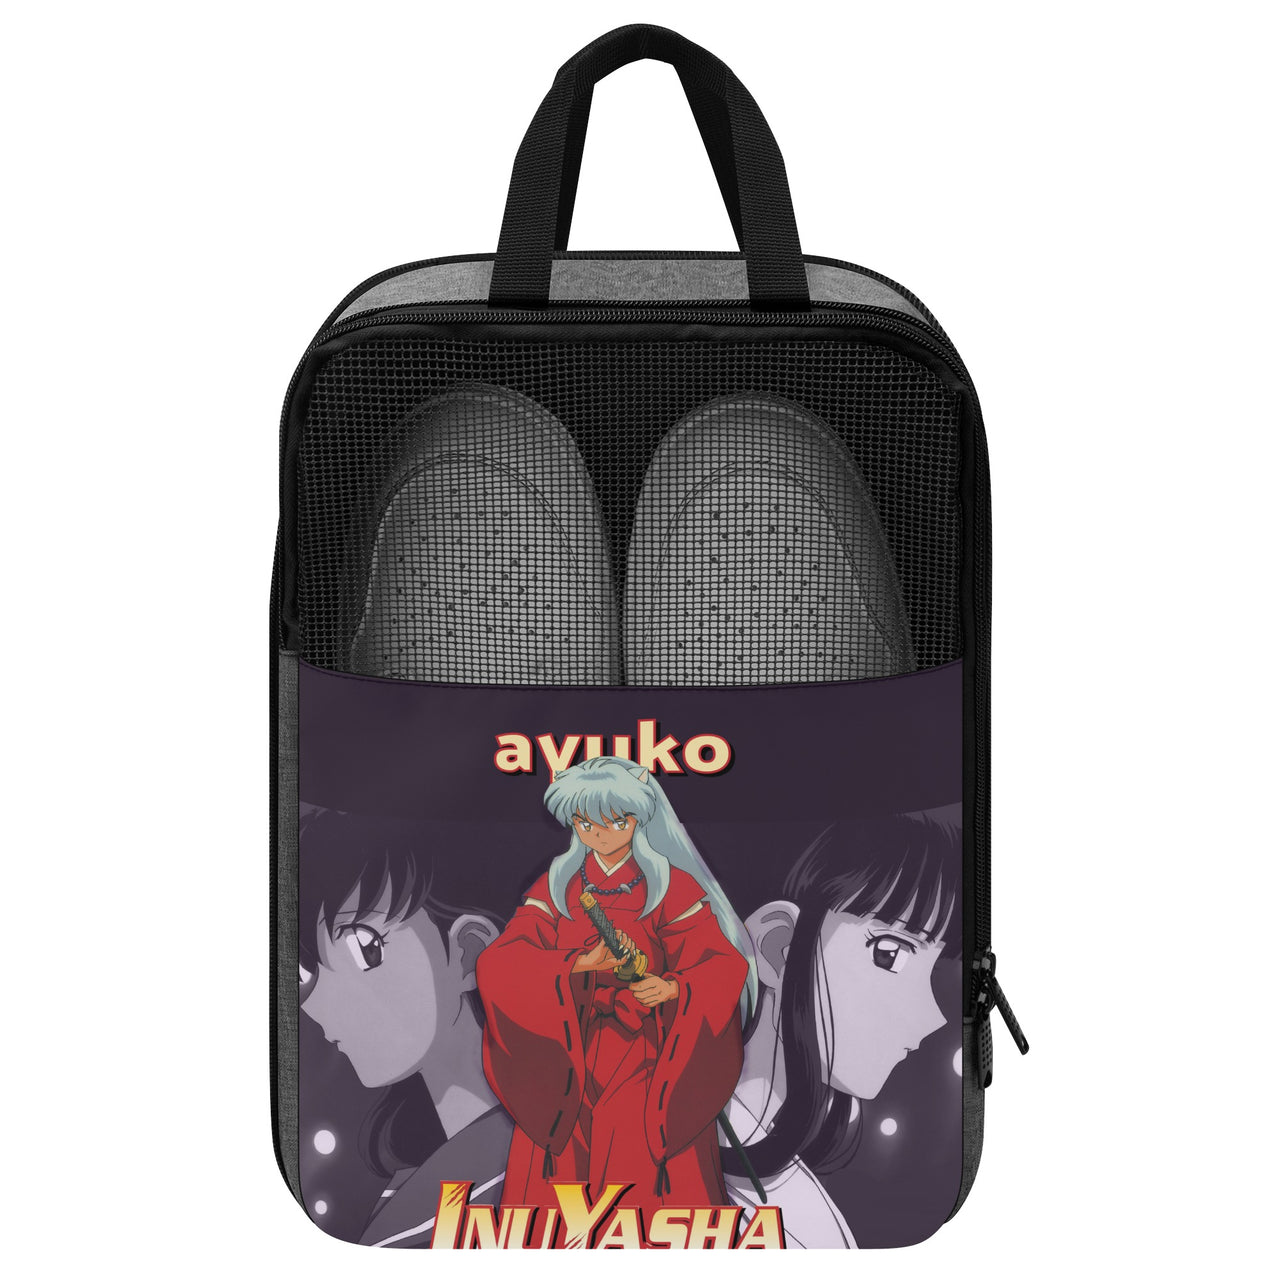 Inuyasha Anime Shoe Bag